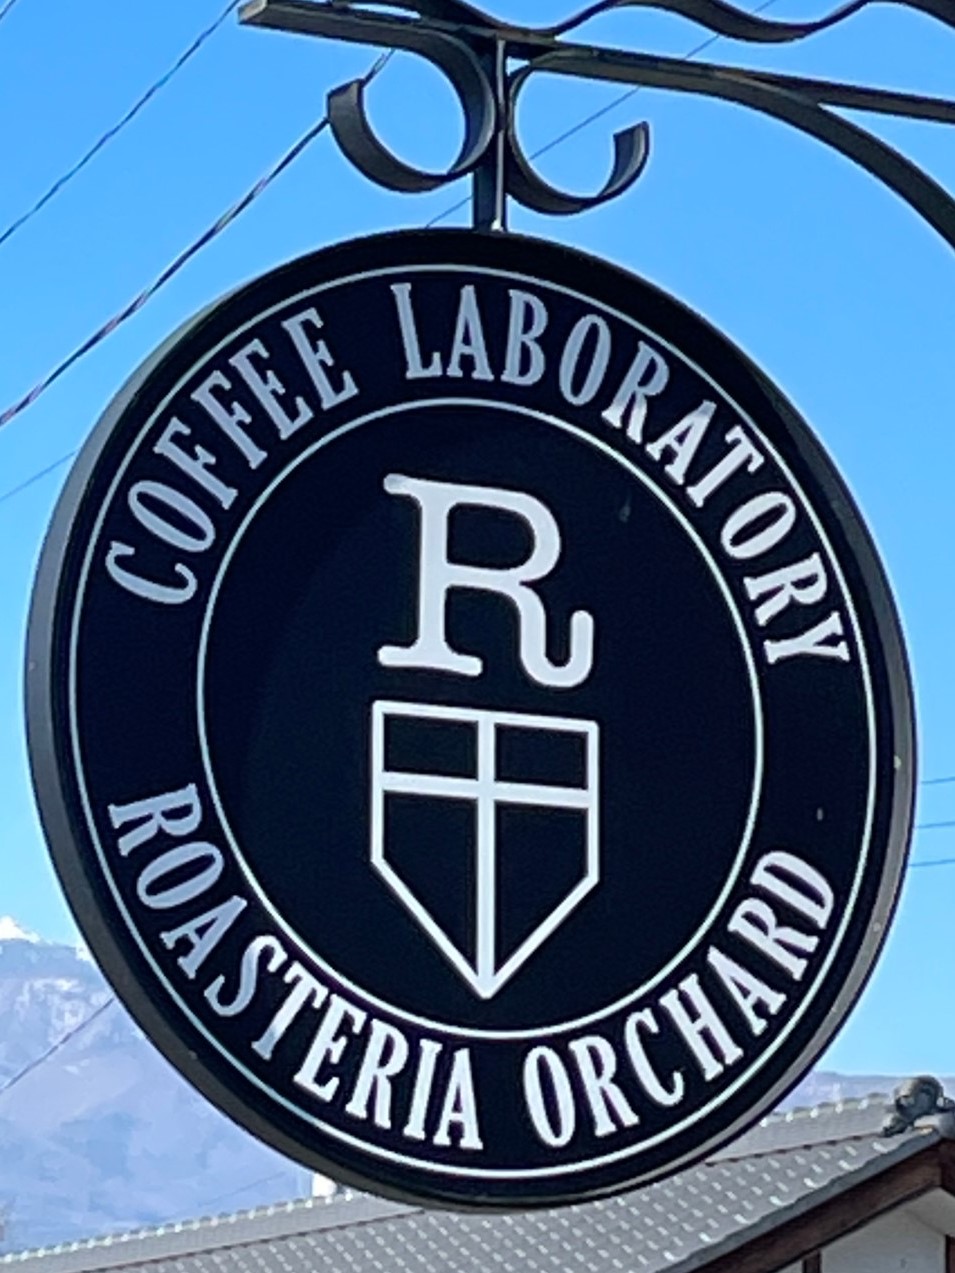 【てくてく南ぷす】COFFEE LABORATORY ROASTERIA ORCHARD